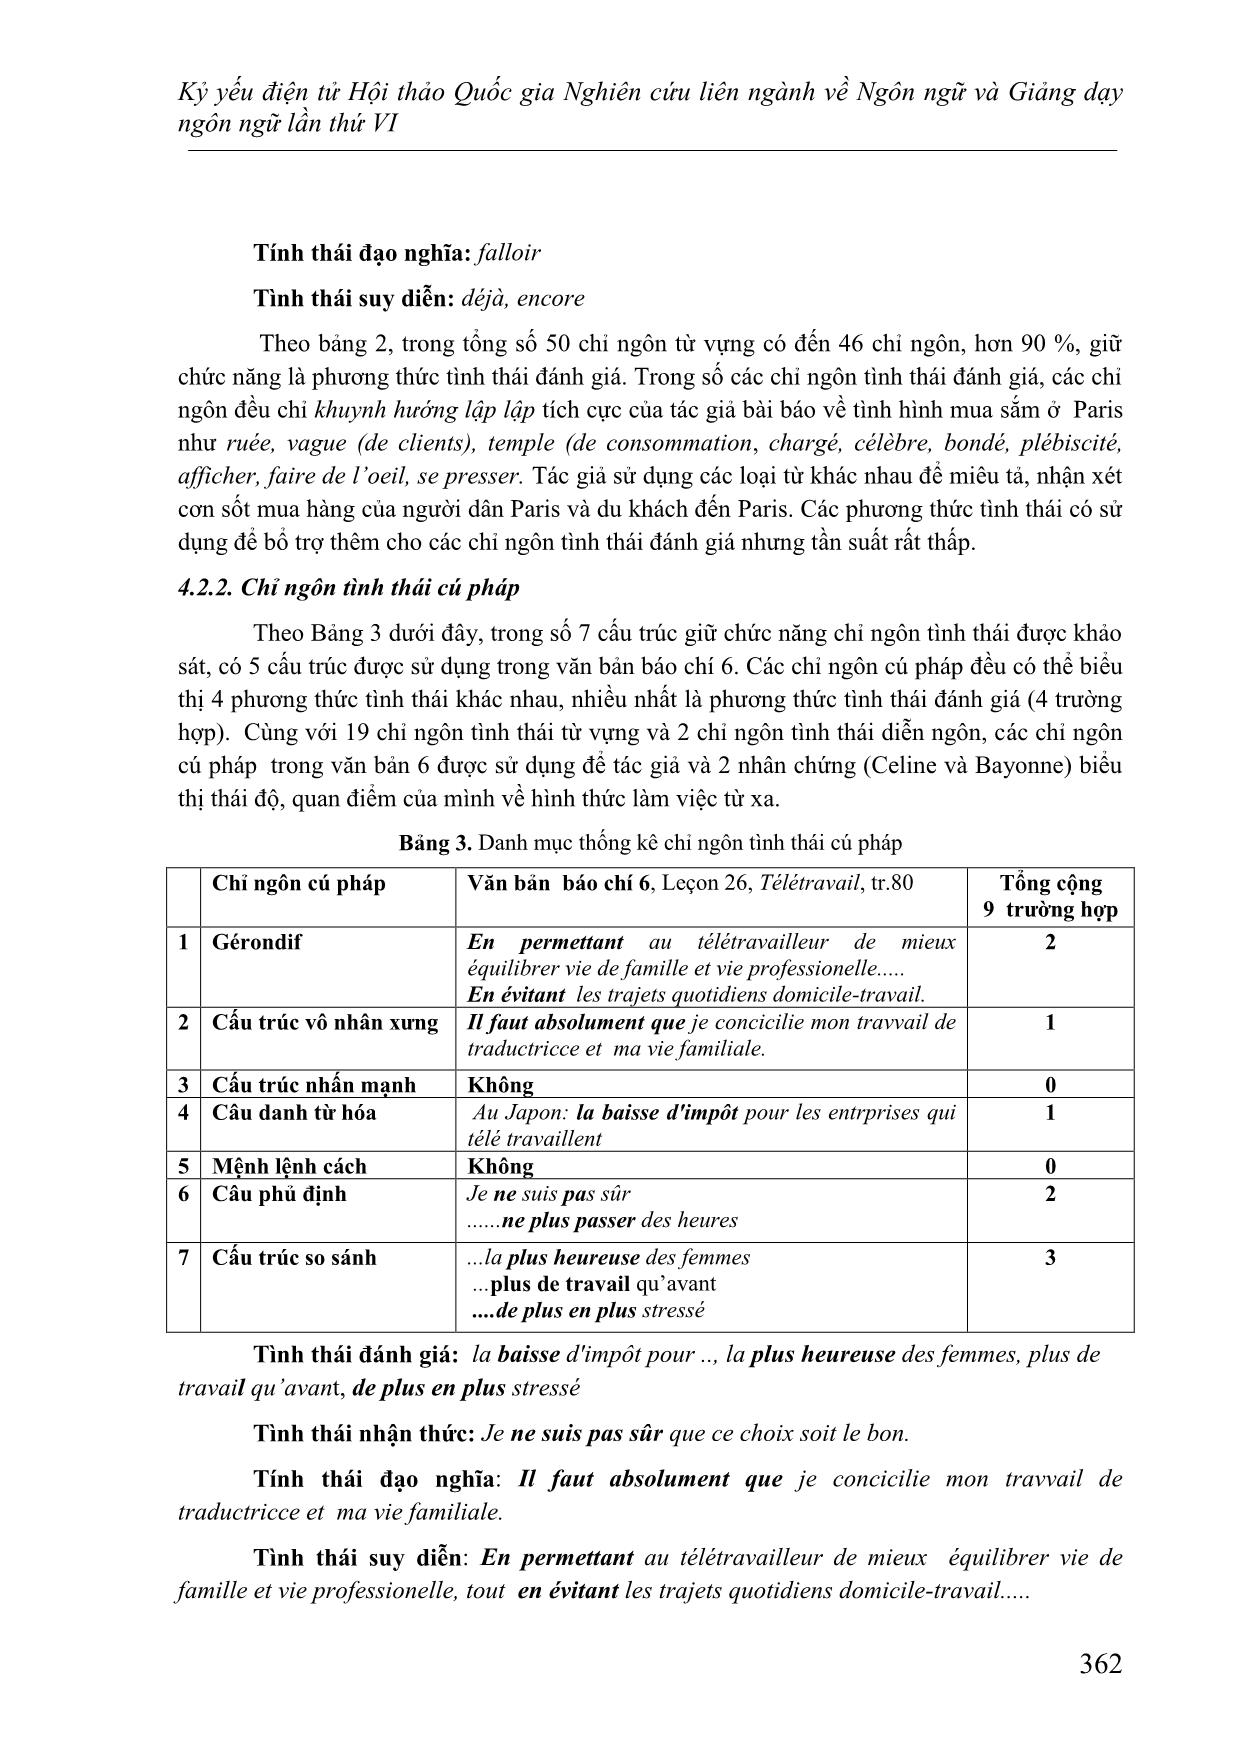 Nghiên cứu việc sử dụng chỉ ngôn tình thái ở các văn bản báo chí bình luận trong sách học tiếng Pháp Le Nouveau Taxi 3 trang 10